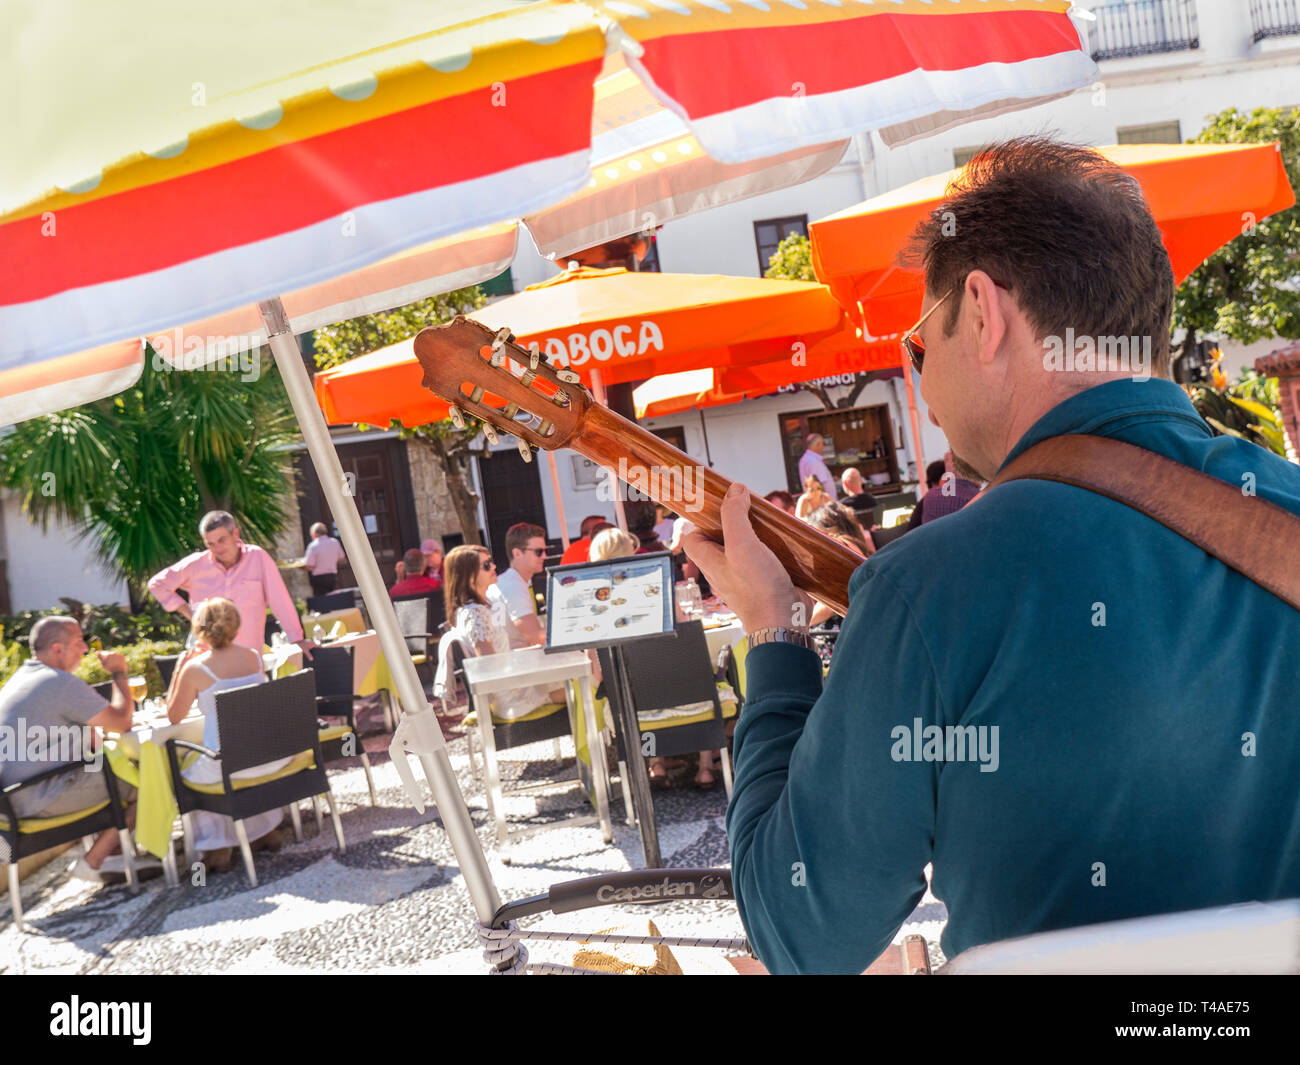 Marbella spanische Gitarristen Musik Unterhaltung Alfresco Restaurant Gäste. Plaza de los Naranjos, Orange Square. Mittagessen & in der Altstadt von Marbella Spanien Stockfoto